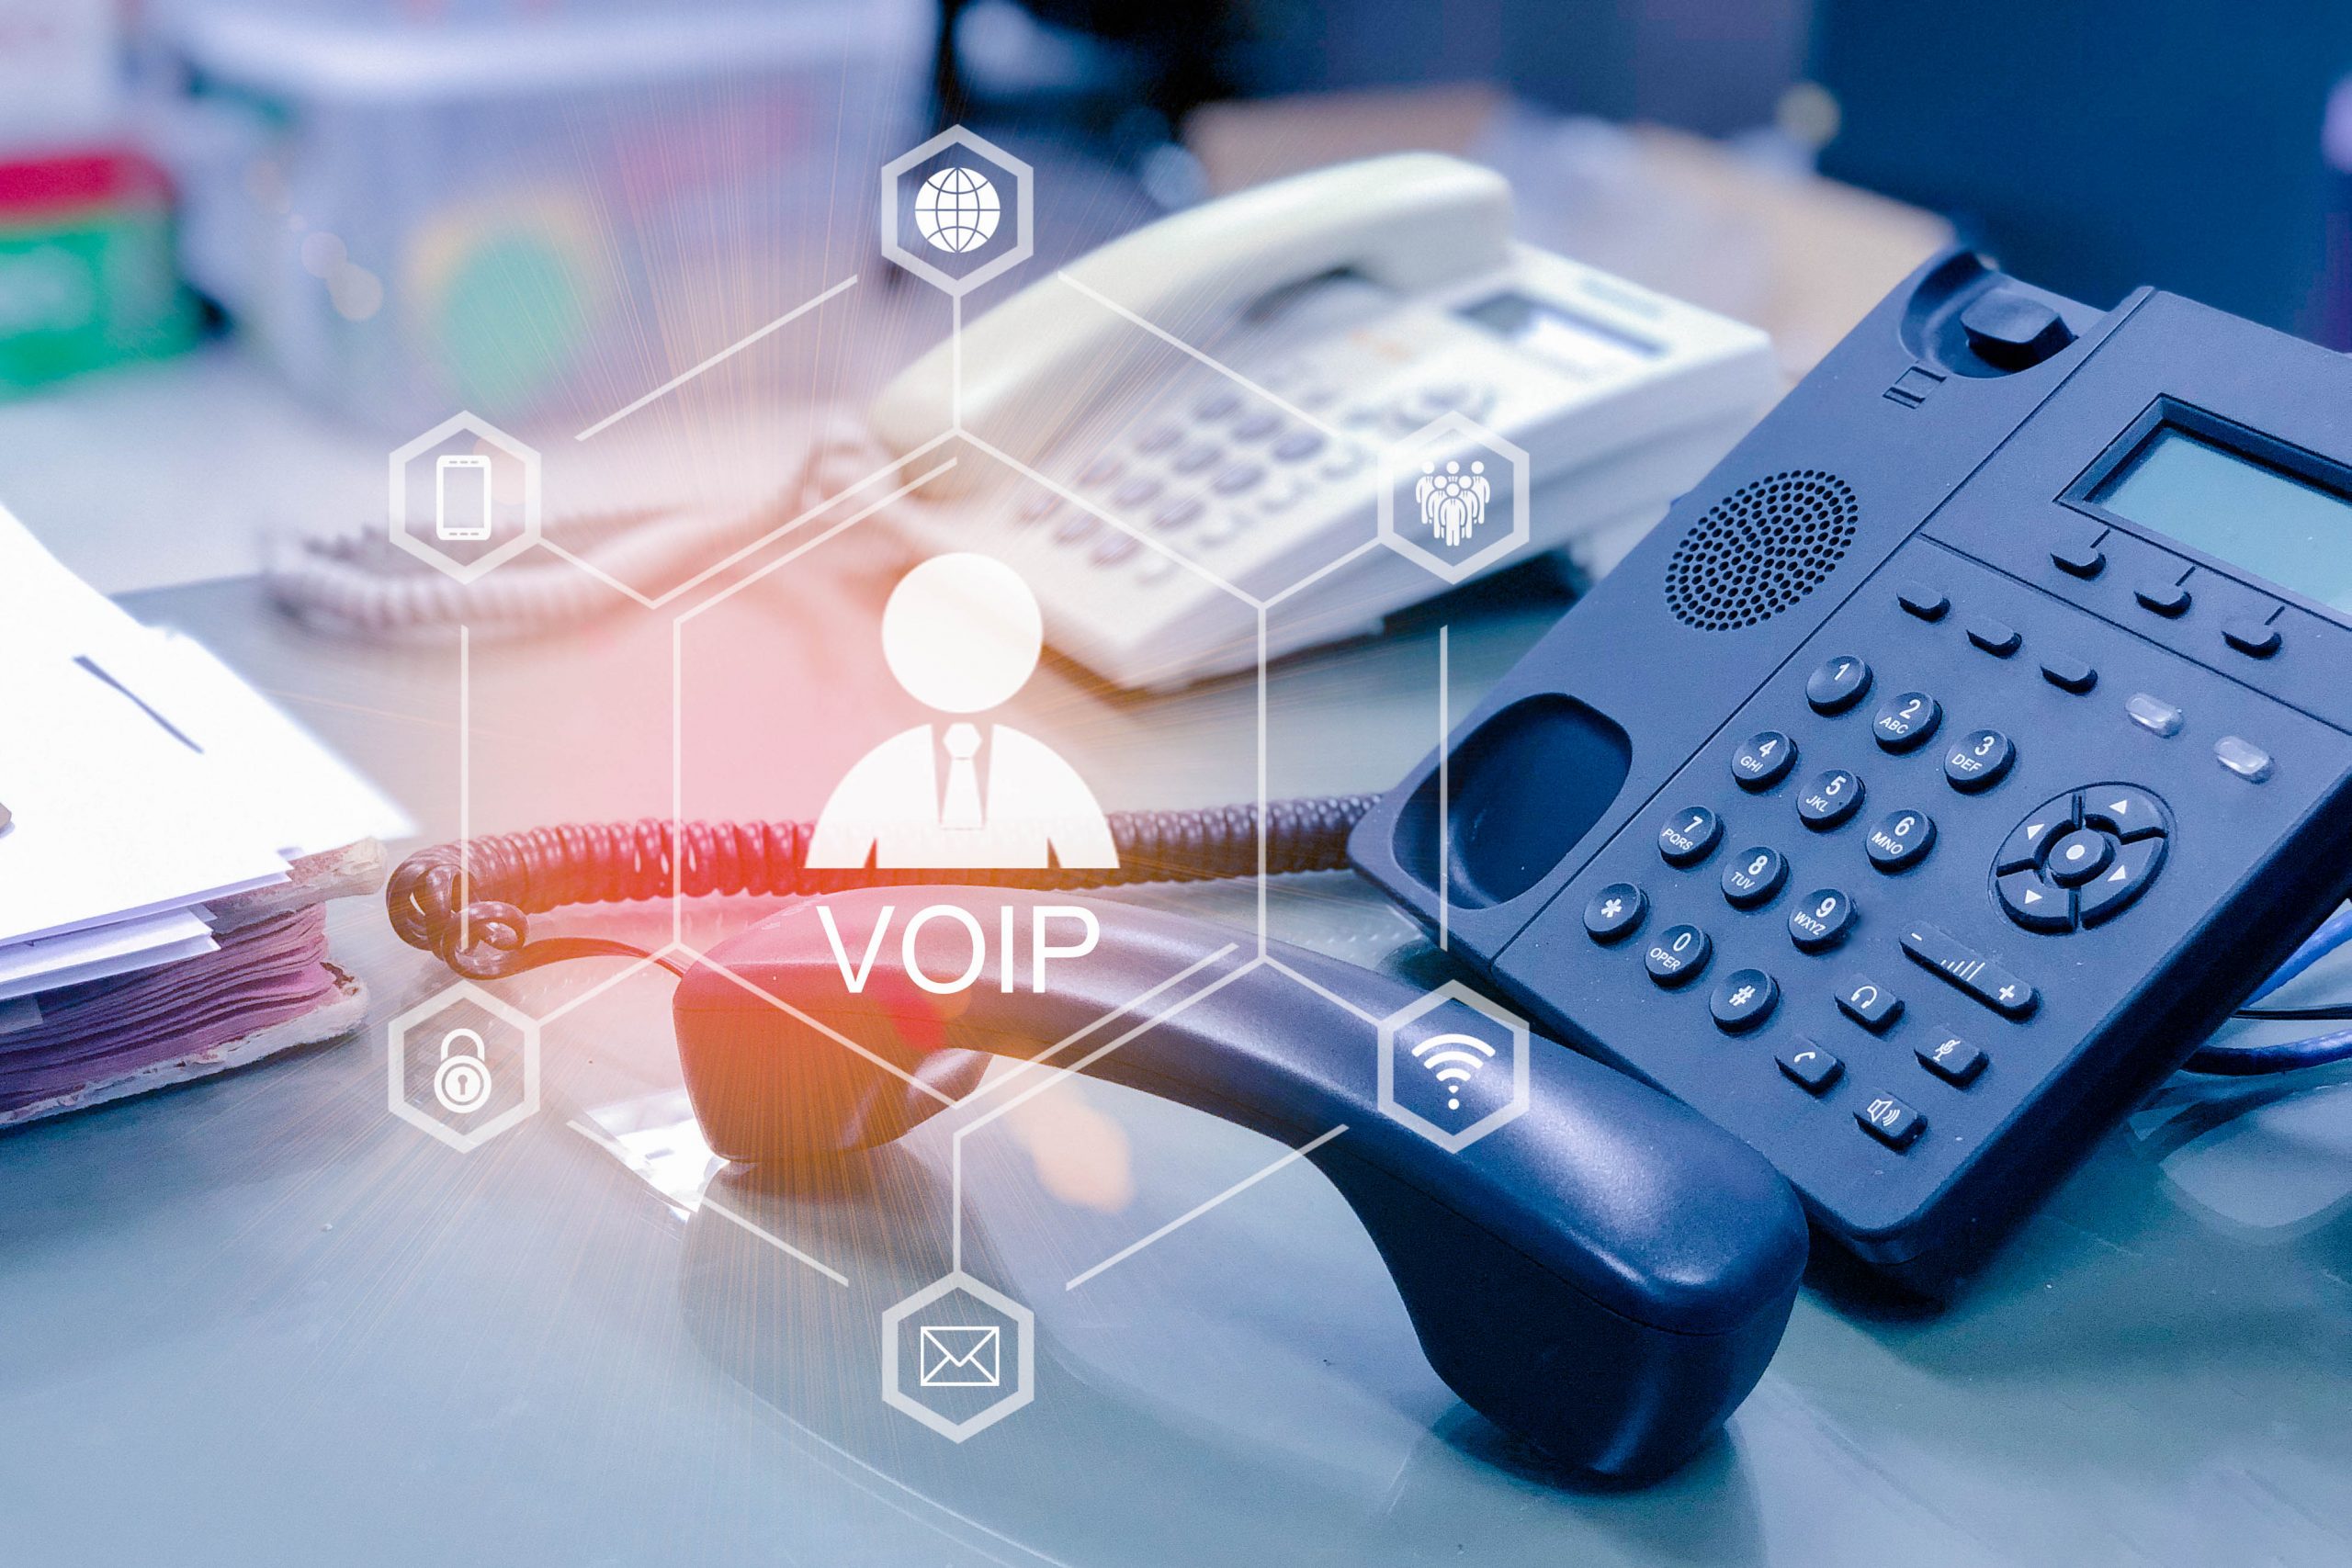 Afinal, por que o VoIP se tornou importante na vida das pessoas e empresas?